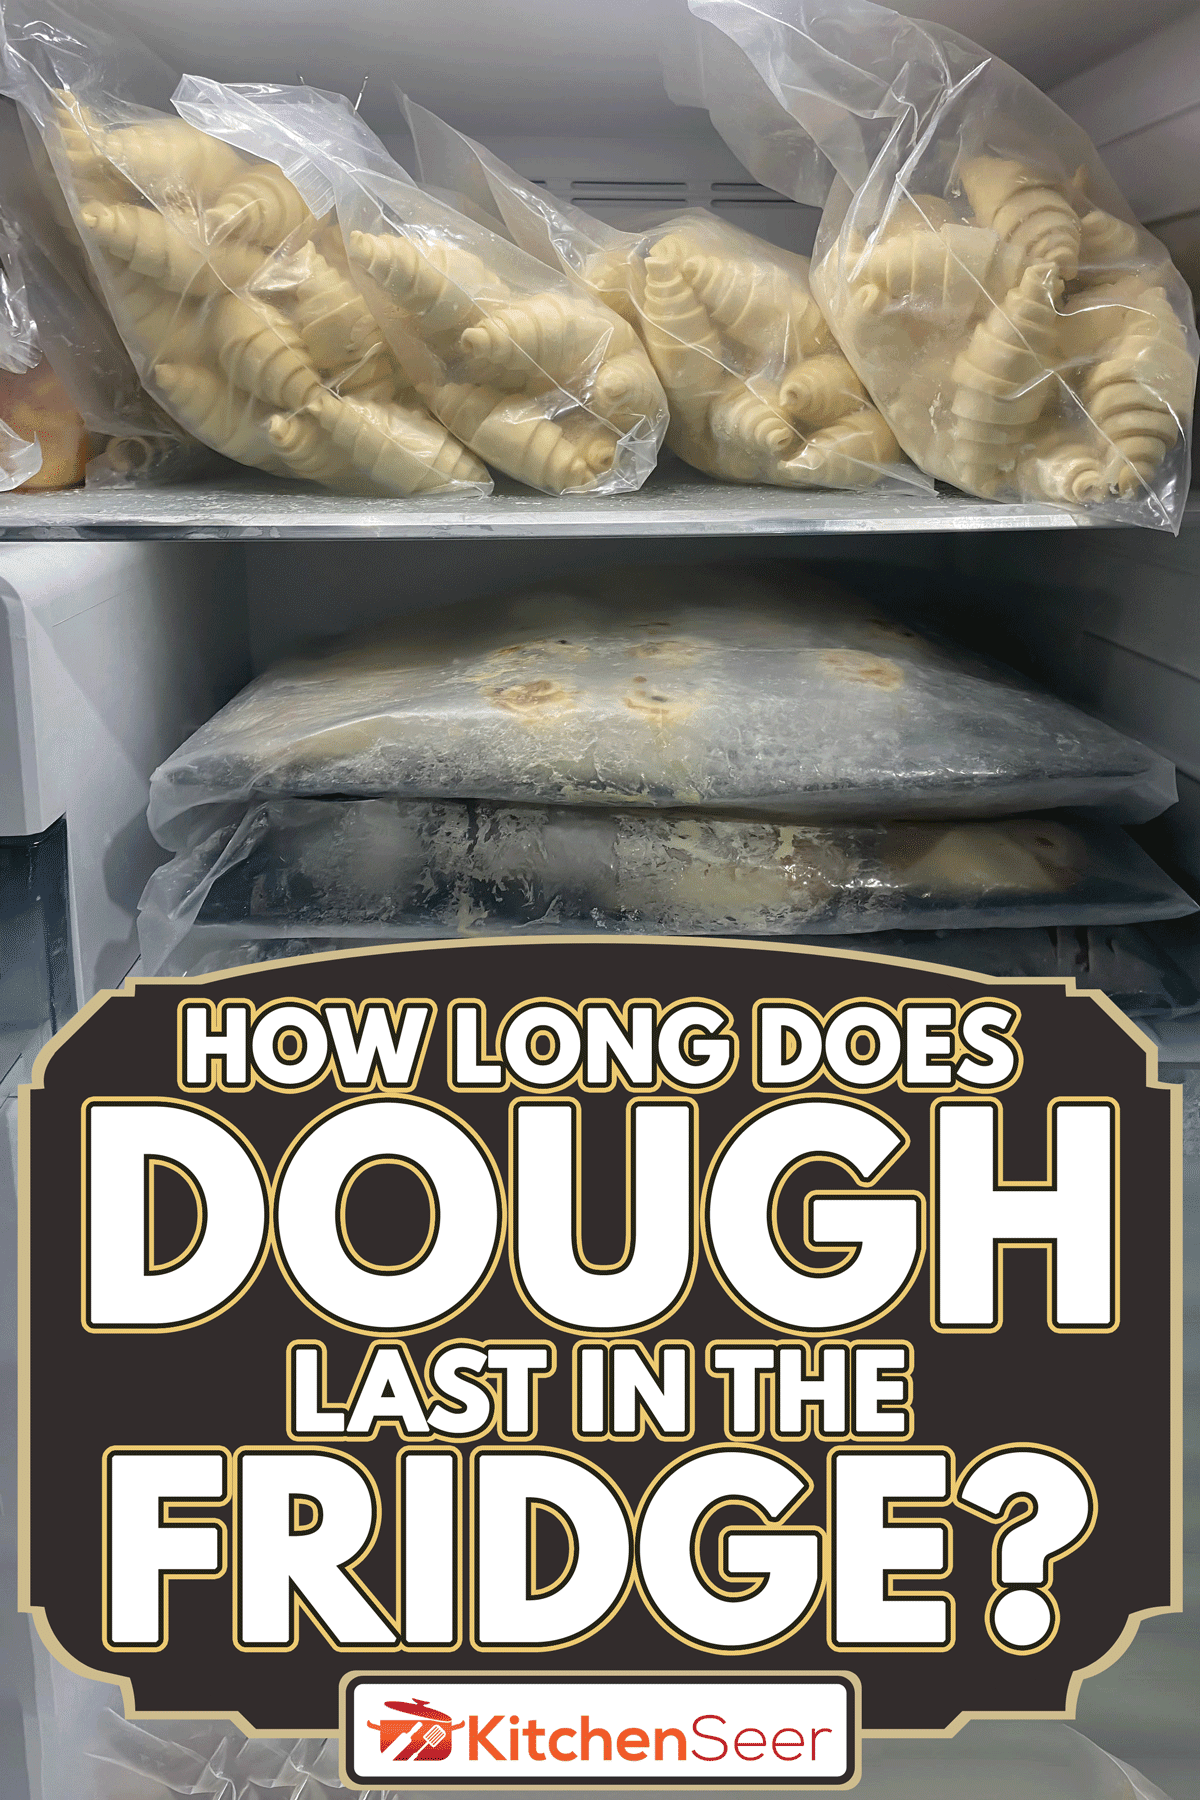 托盘的原始羊角面包面团放入冰箱,冰箱里的面团要多长时间?”width=